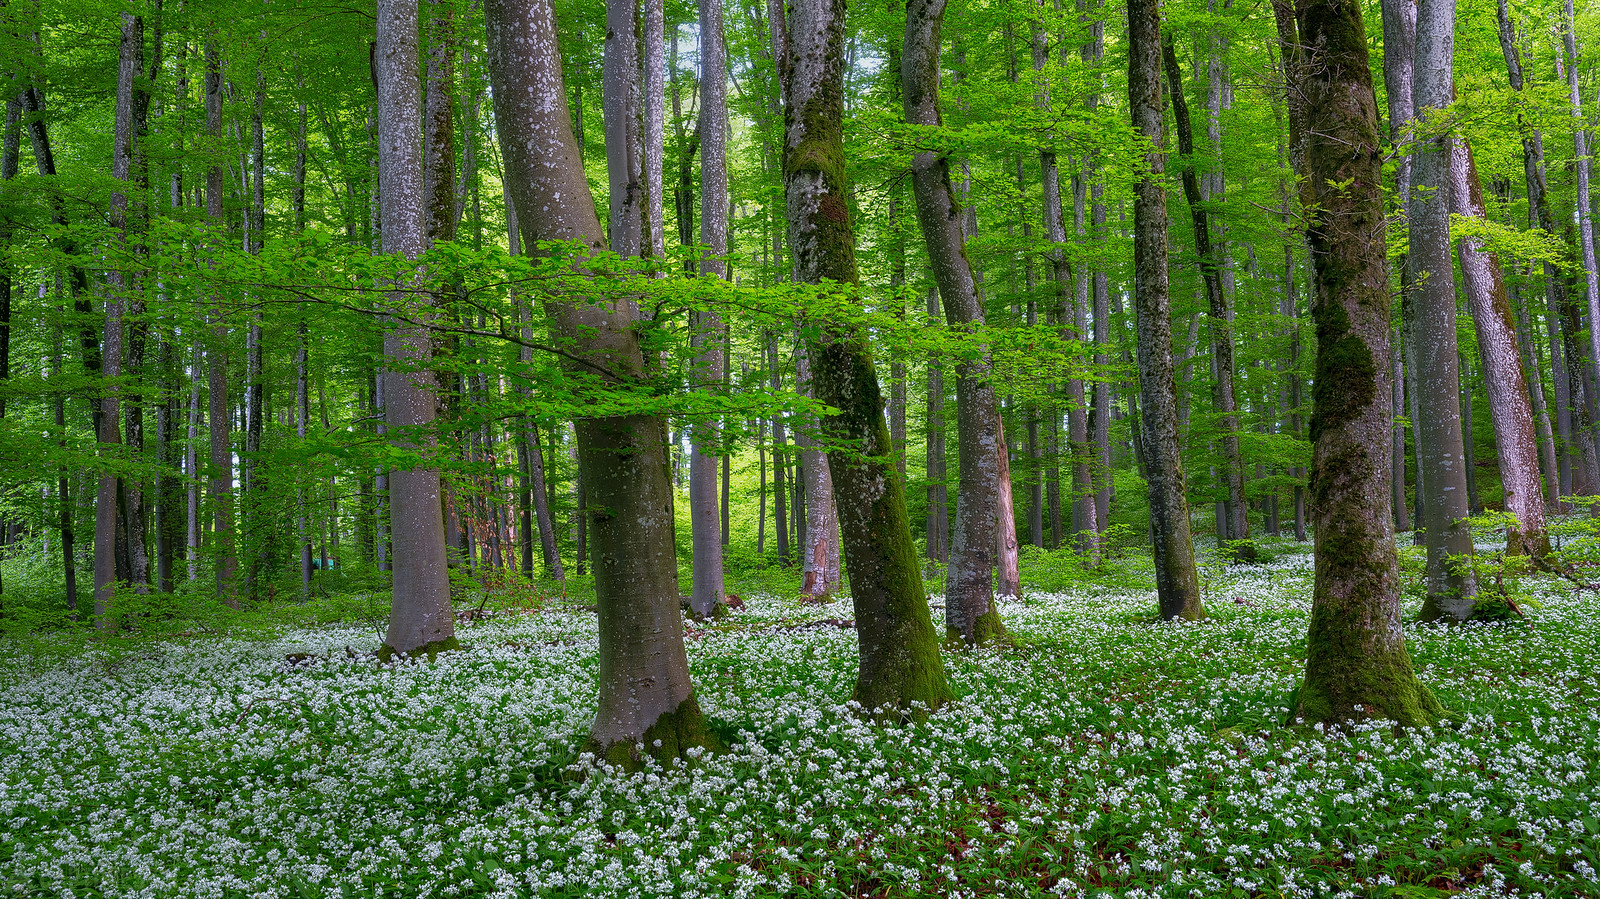 Garlic forest - Aargau